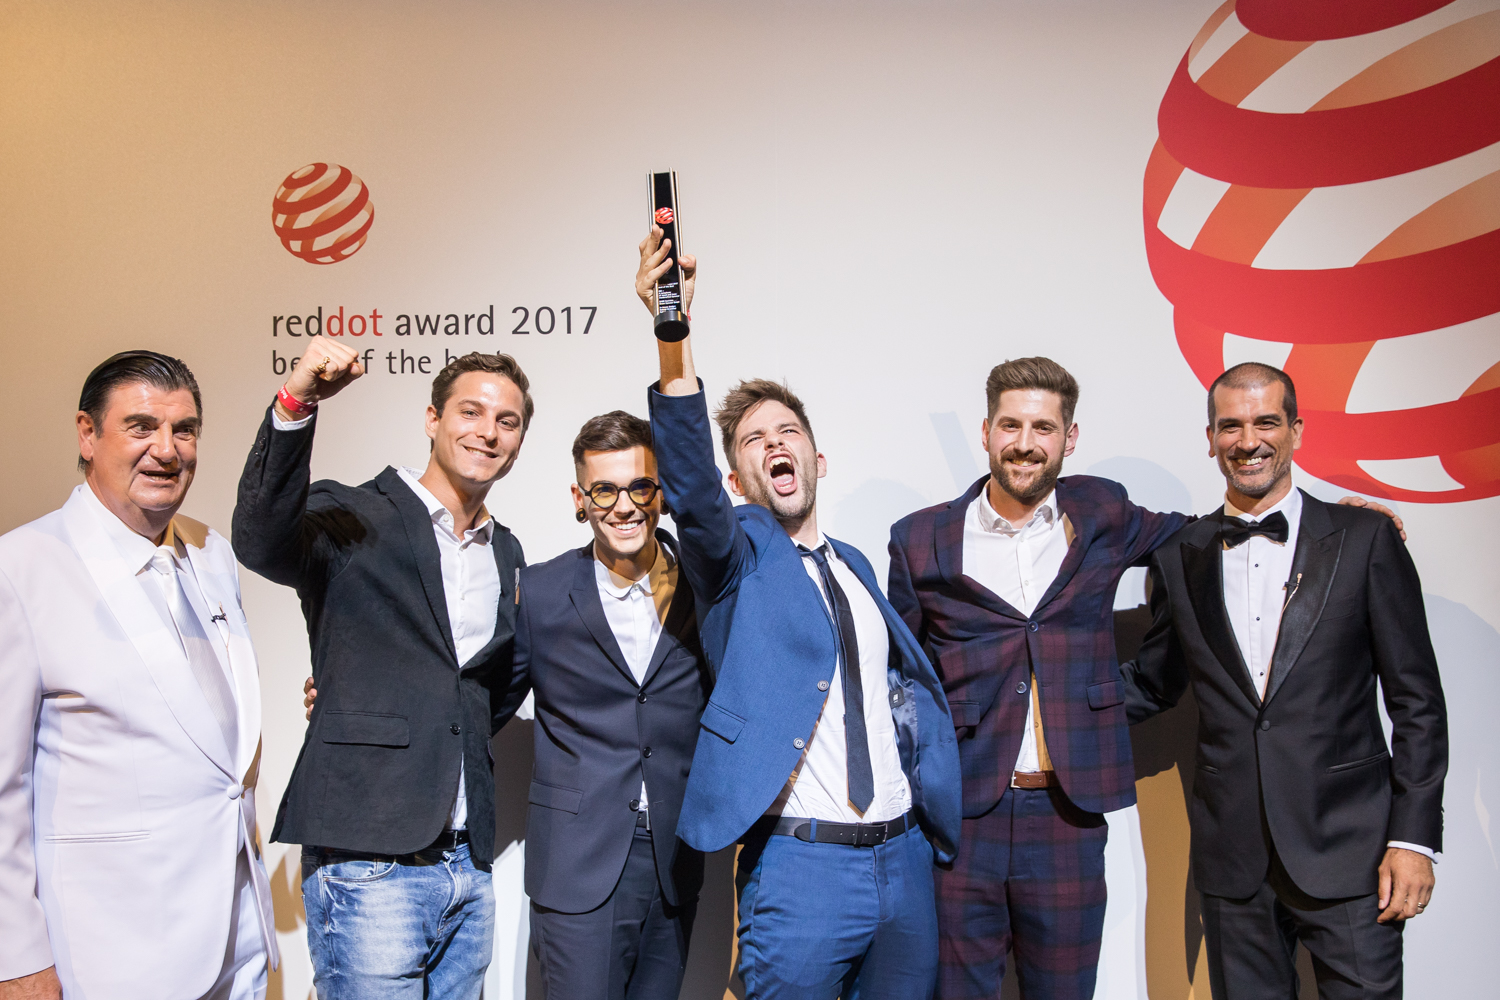 red dot award - gala night - 2017